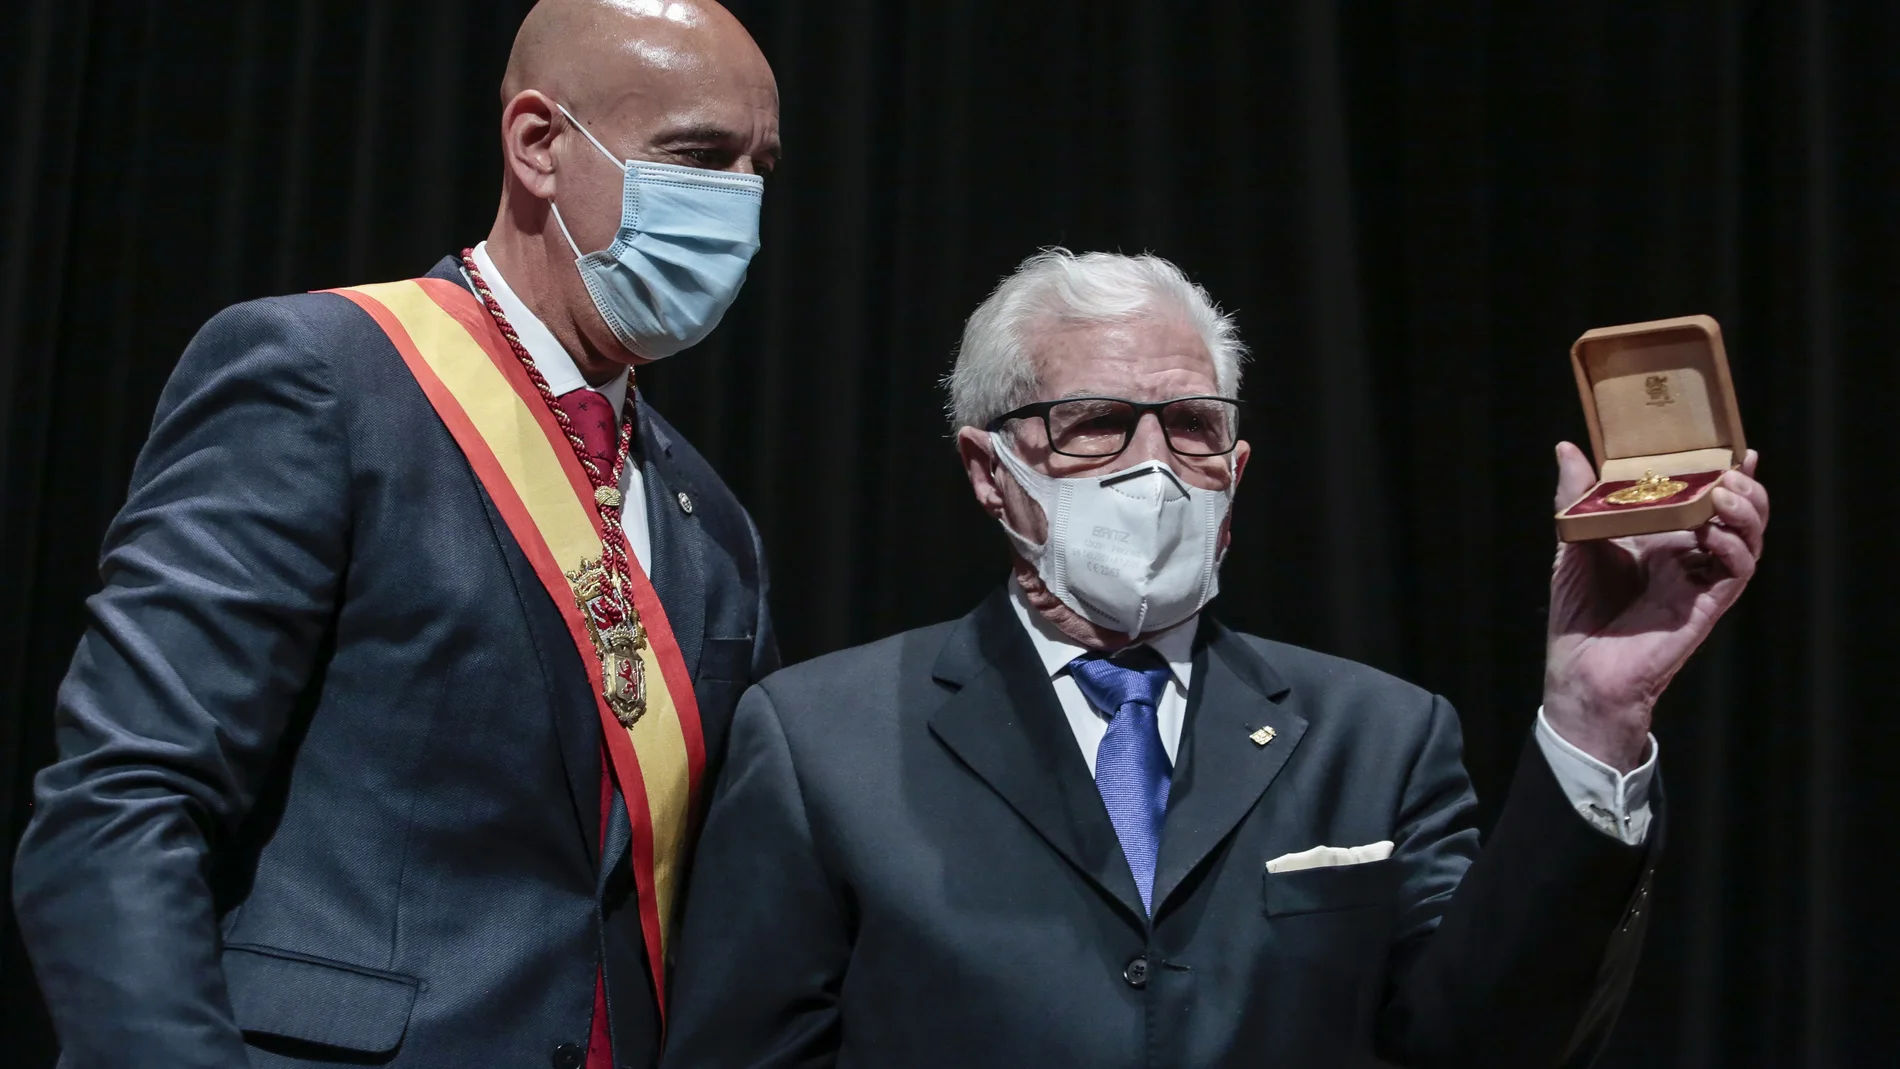 El alcalde de León, José Antonio Diez, entrega la Medalla Oro de la ciudad al empresario Cesáreo González Diez, fundador y presidente de honor de la Fundación Cepa González Diez